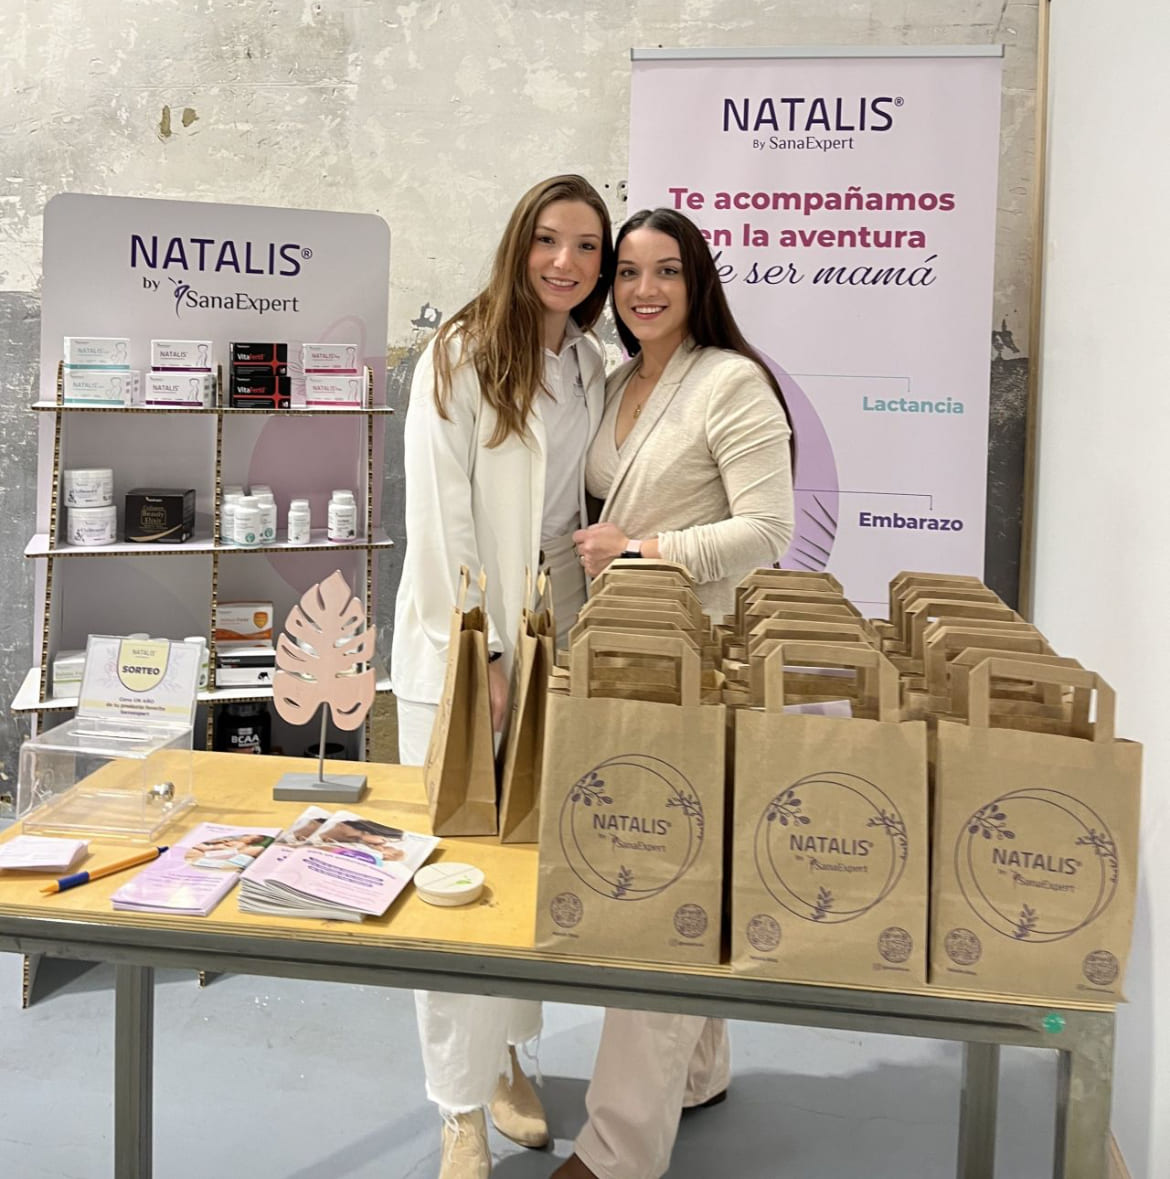 Laura und Nayara von SanaExpert lächeln hinter einem Natalis-Produktstand mit einer Auswahl an Gesundheitsprodukten und informativen Broschüren, umgeben von Papiertüten.